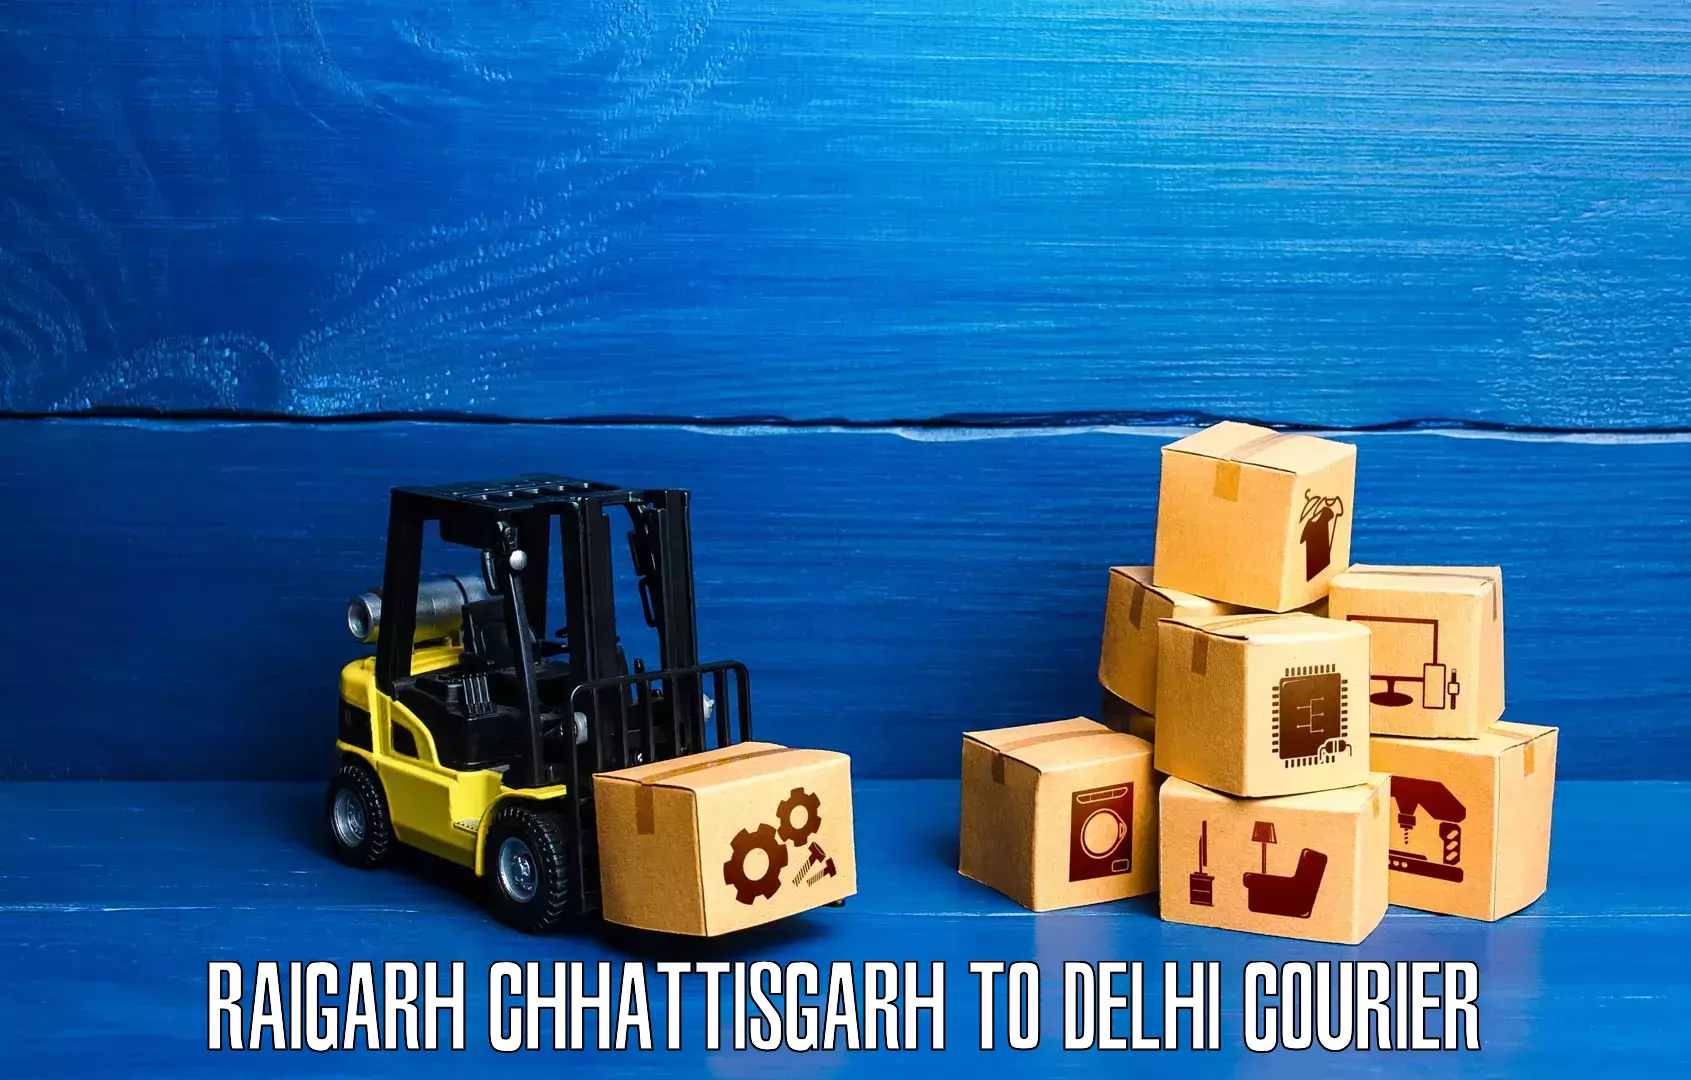 Express delivery capabilities in Raigarh Chhattisgarh to Delhi